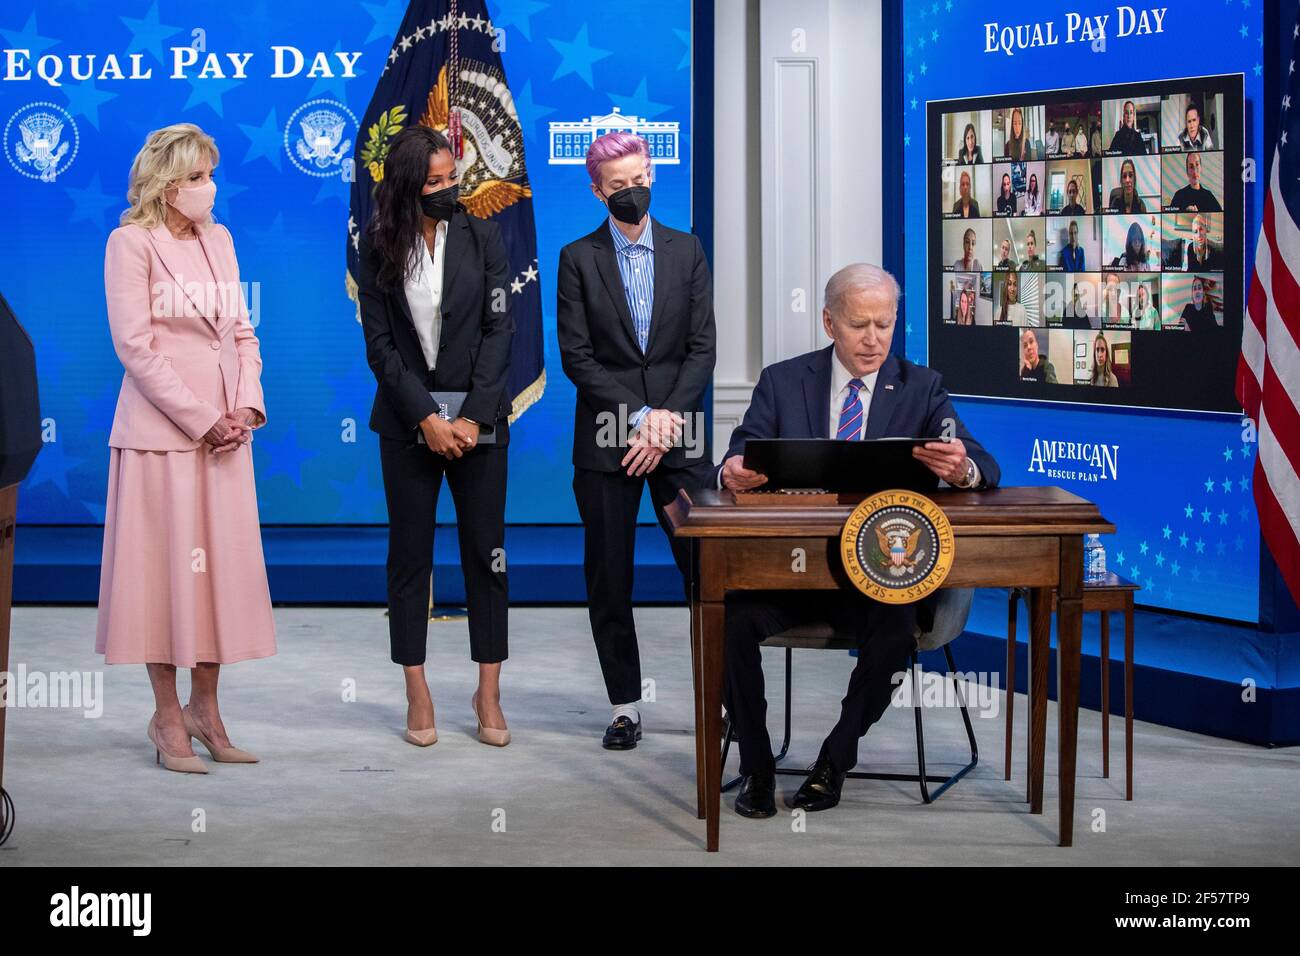 US-Präsident Joe Biden, mit First Lady Dr. Jill Biden (L), Margaret Purce (2-L), Megan Rapinoe (2-R) und anderen Mitgliedern der US Soccer WomenÕs National Team, unterzeichnet eine Proklamation während einer Veranstaltung zum Tag der gleichen Bezahlung im Staatlichen Speisesaal des Weißen Hauses in Washington, DC, USA, 24. März 2021. Equal Pay Day markiert die zusätzliche Zeit, die es dauert eine durchschnittliche Frau in den Vereinigten Staaten, um den gleichen Lohn zu verdienen, dass ihre männlichen Kollegen im vorherigen Kalenderjahr. Stockfoto